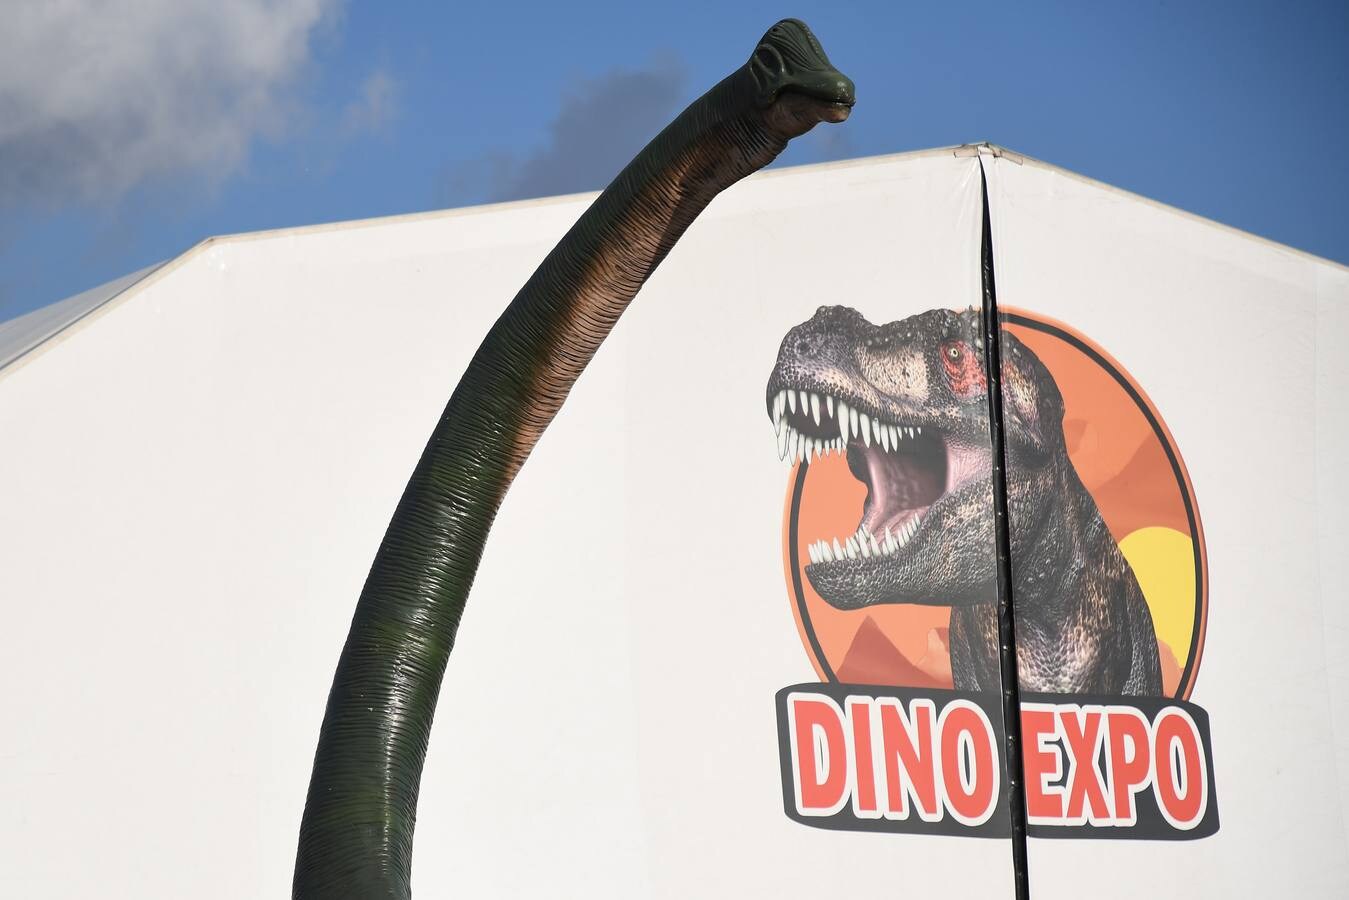 Las imágenes de la exposición de dinosaurios XXL en Sevilla, Dino Expo